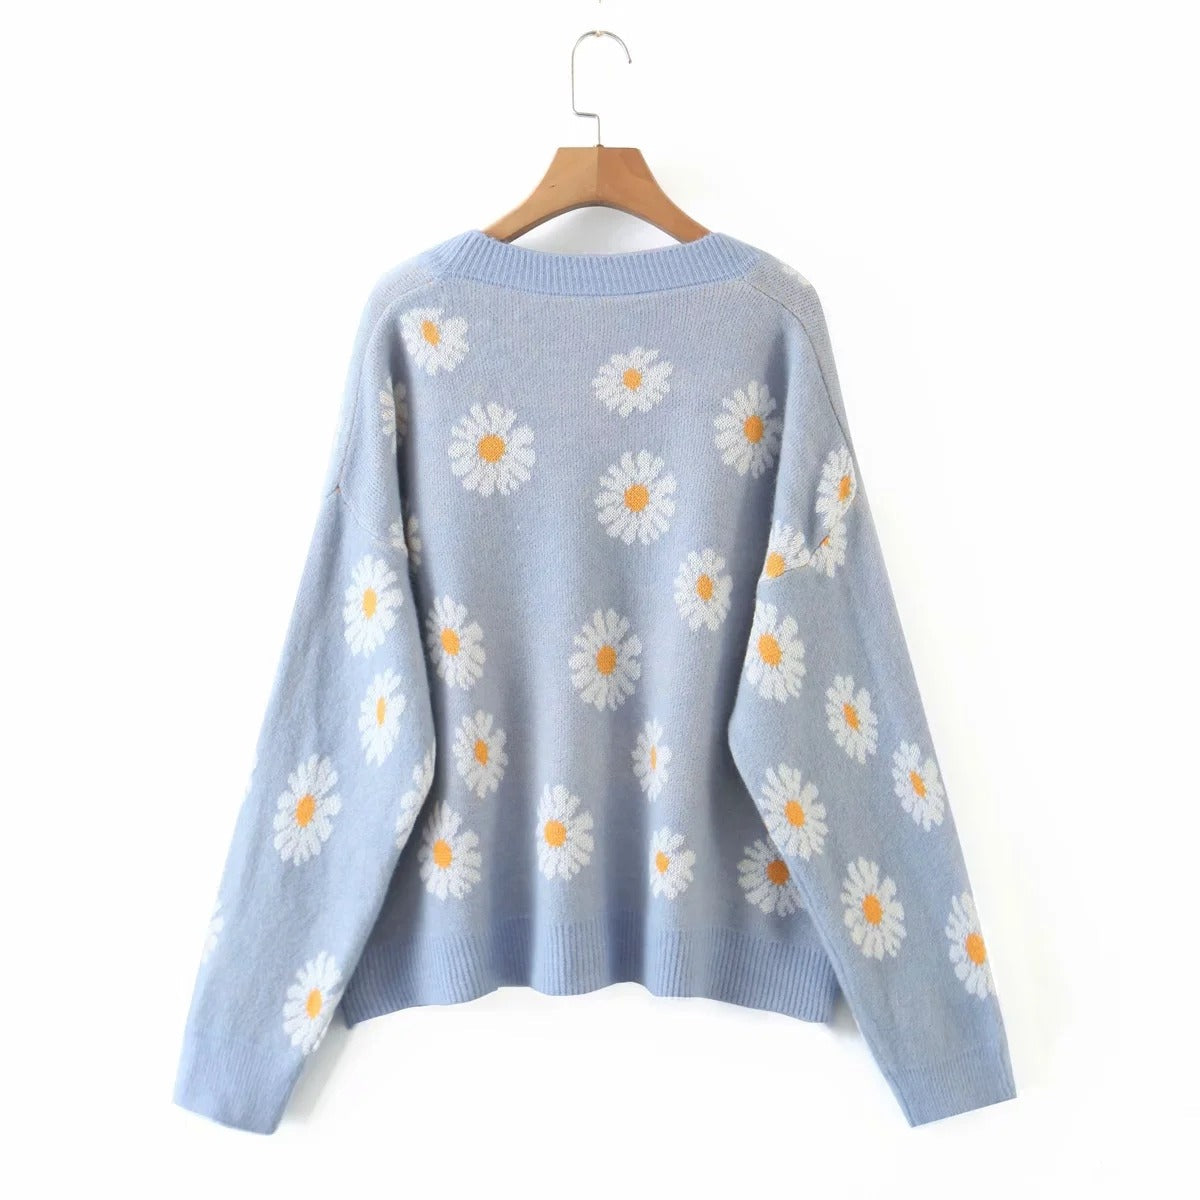 Sweet Sunflower Knitwear Cardigan Sweater